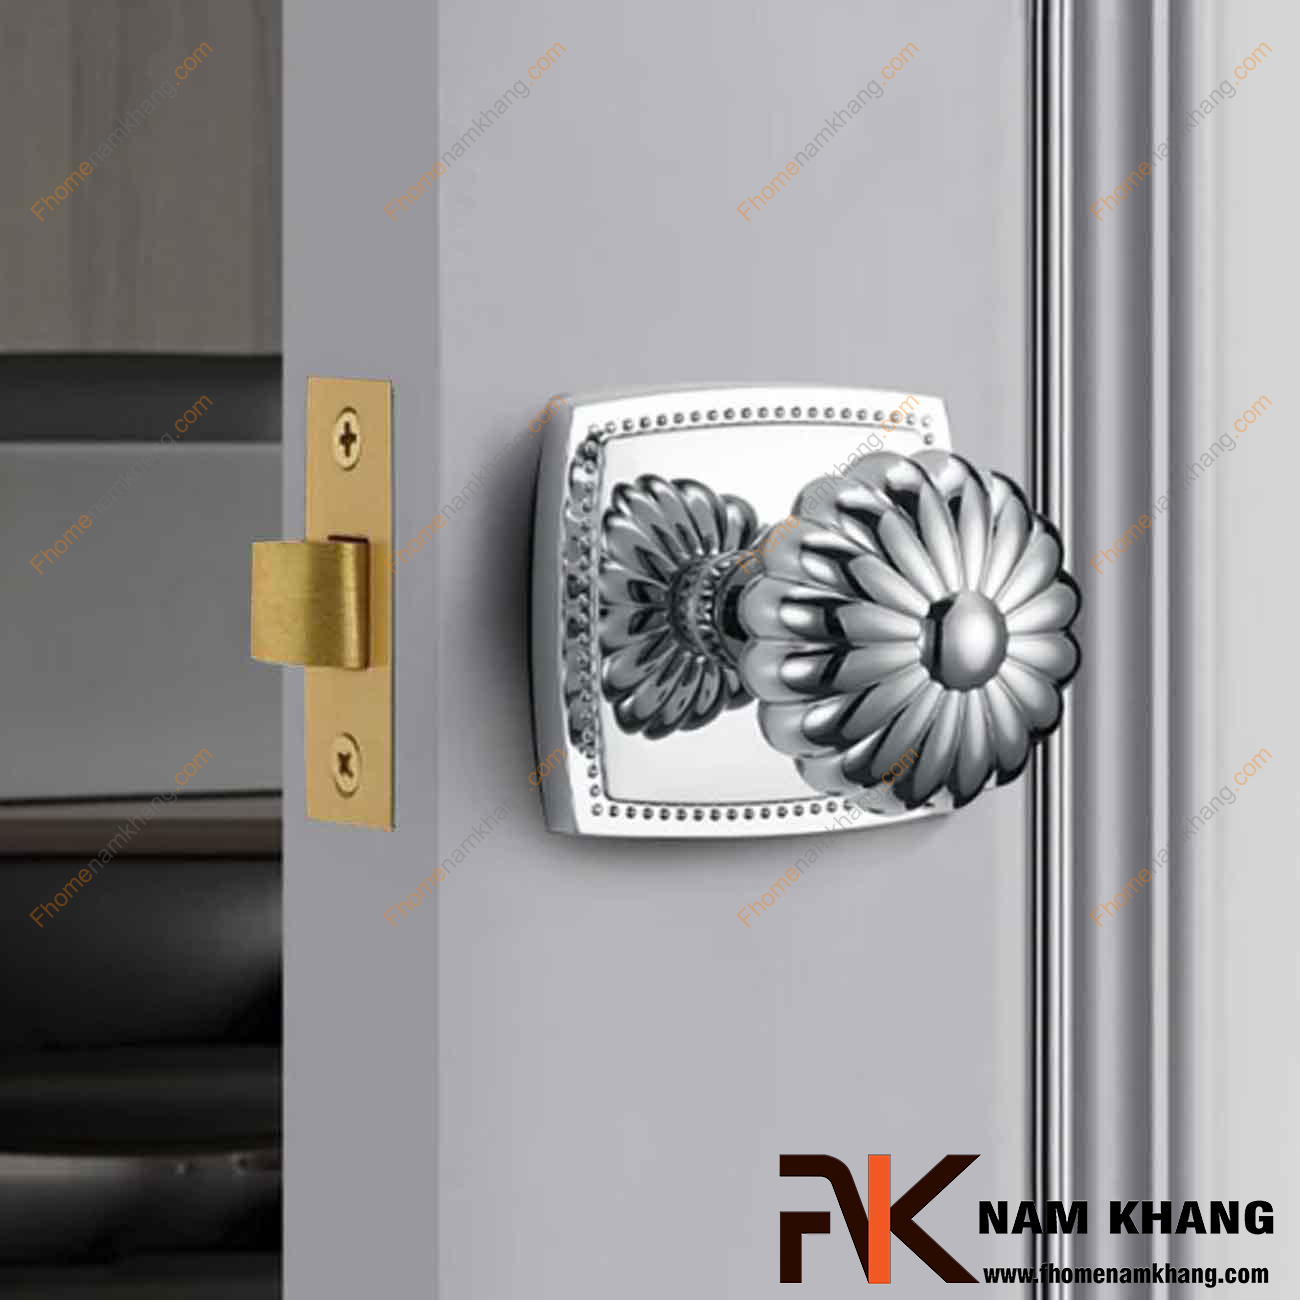 Khóa chốt cửa màu trắng bạc NK579C-B có thiết kế cách điệu, đường nét mềm mại, mang giá trị thẩm mĩ cao.